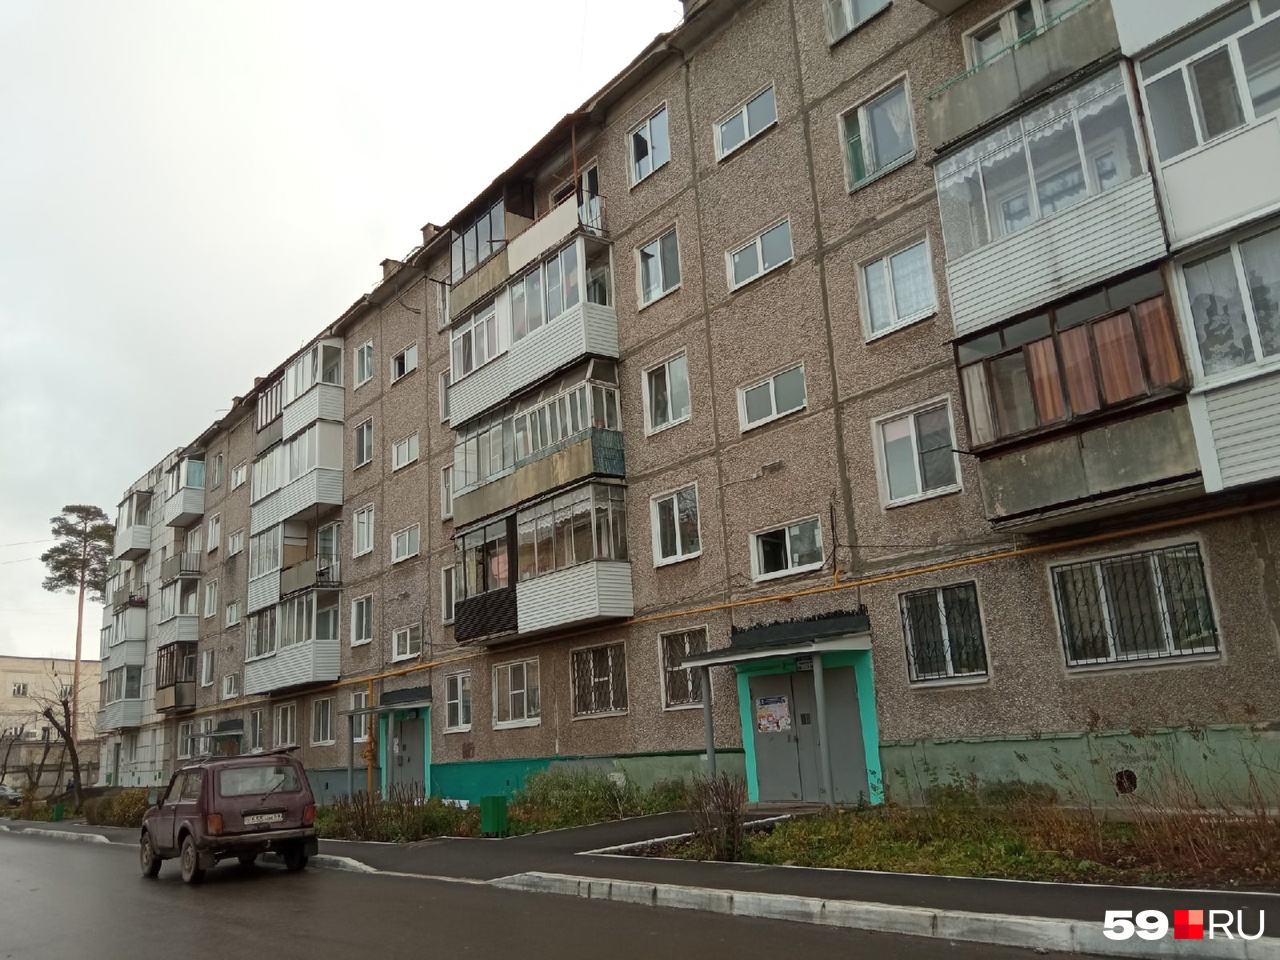 Малышев вернулся в свою старую квартиру в пятиэтажке на окраине Перми